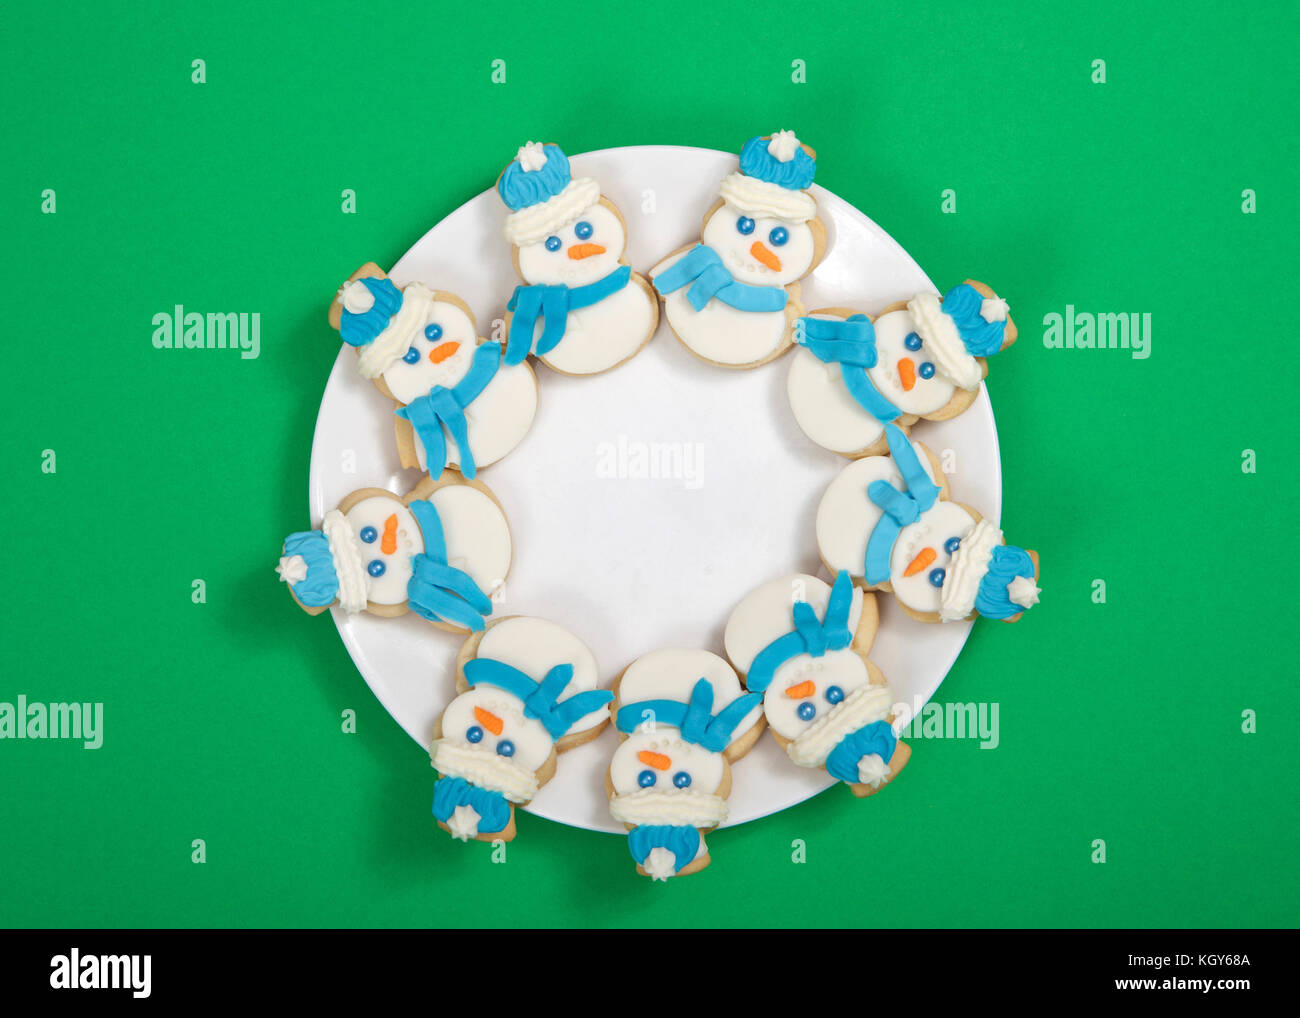 Le SNOWMAN sugar cookies décorés de marshmallow fondant, le glaçage royal  bleu foulard et chapeau disposées en cercle sur une assiette de porcelaine.  fond vert Photo Stock - Alamy